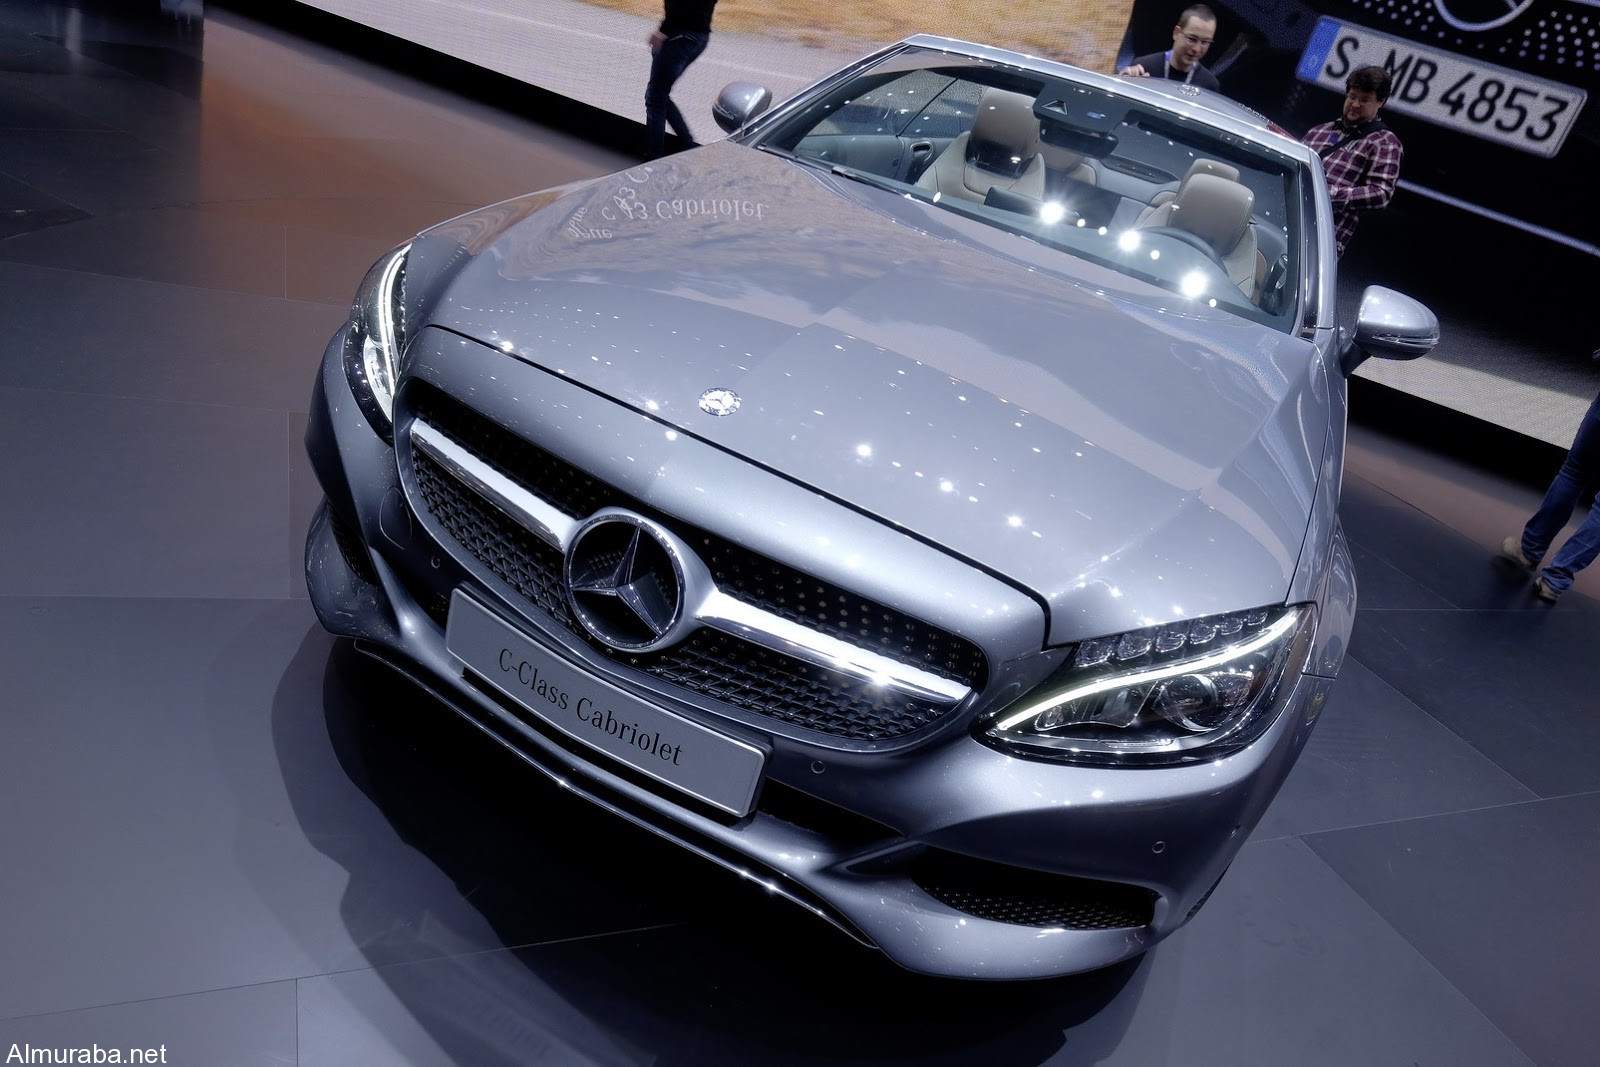 "مرسيدس بنز" تضيف سيارة جديدة لعائلة C-Class وتطلقها بمعرض سيارات جنيف Mercedes 2017 38